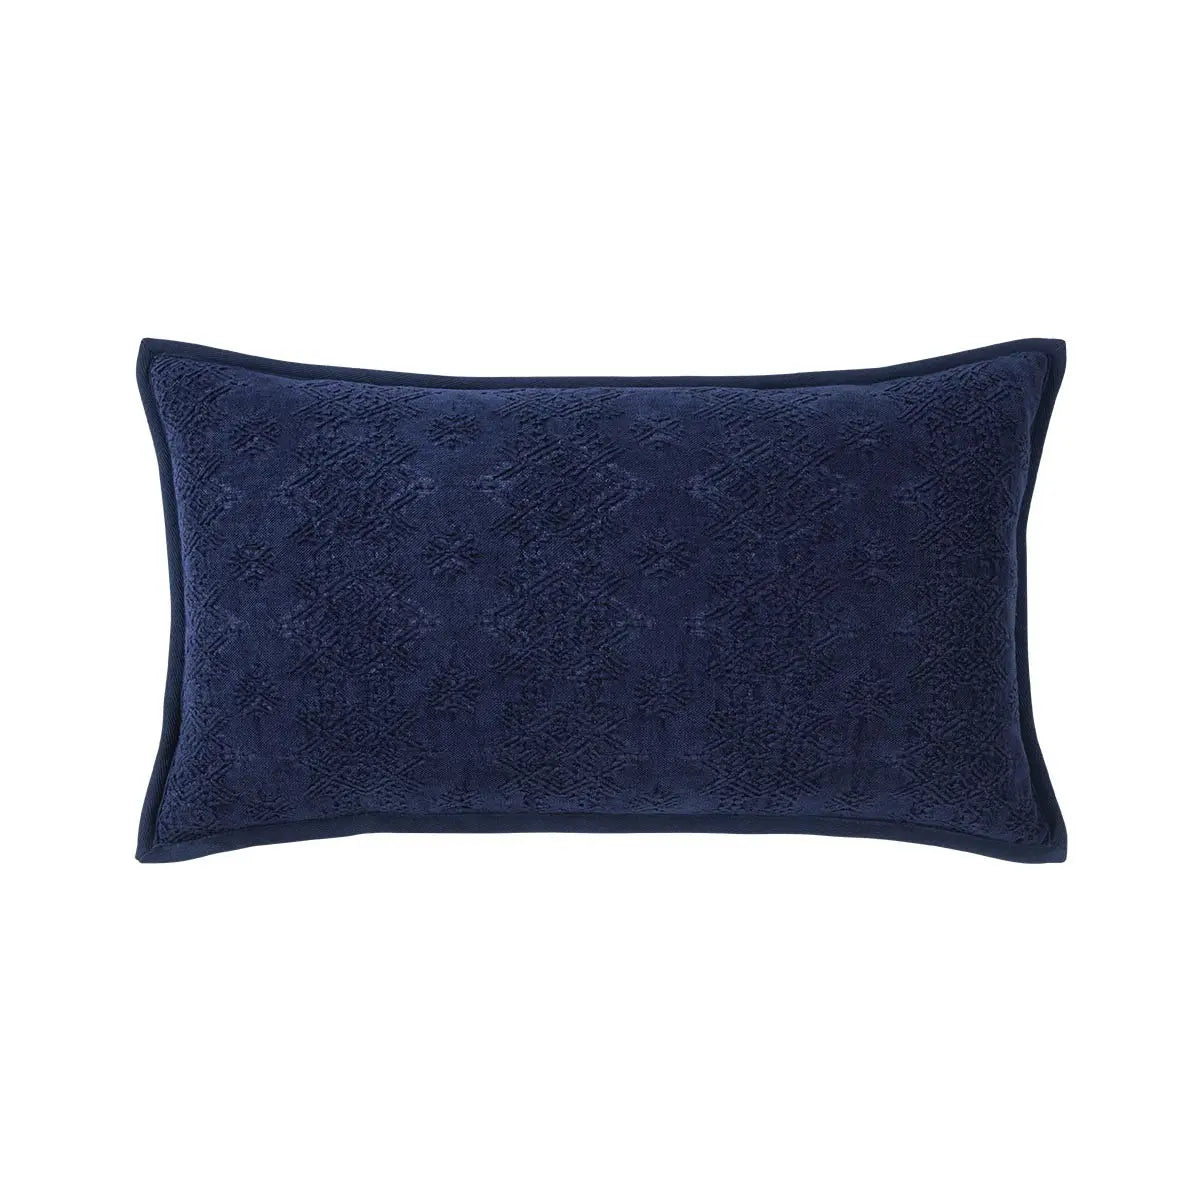 Yves Delorme Syracuse 13x22 Decorative Pillow - Indigo